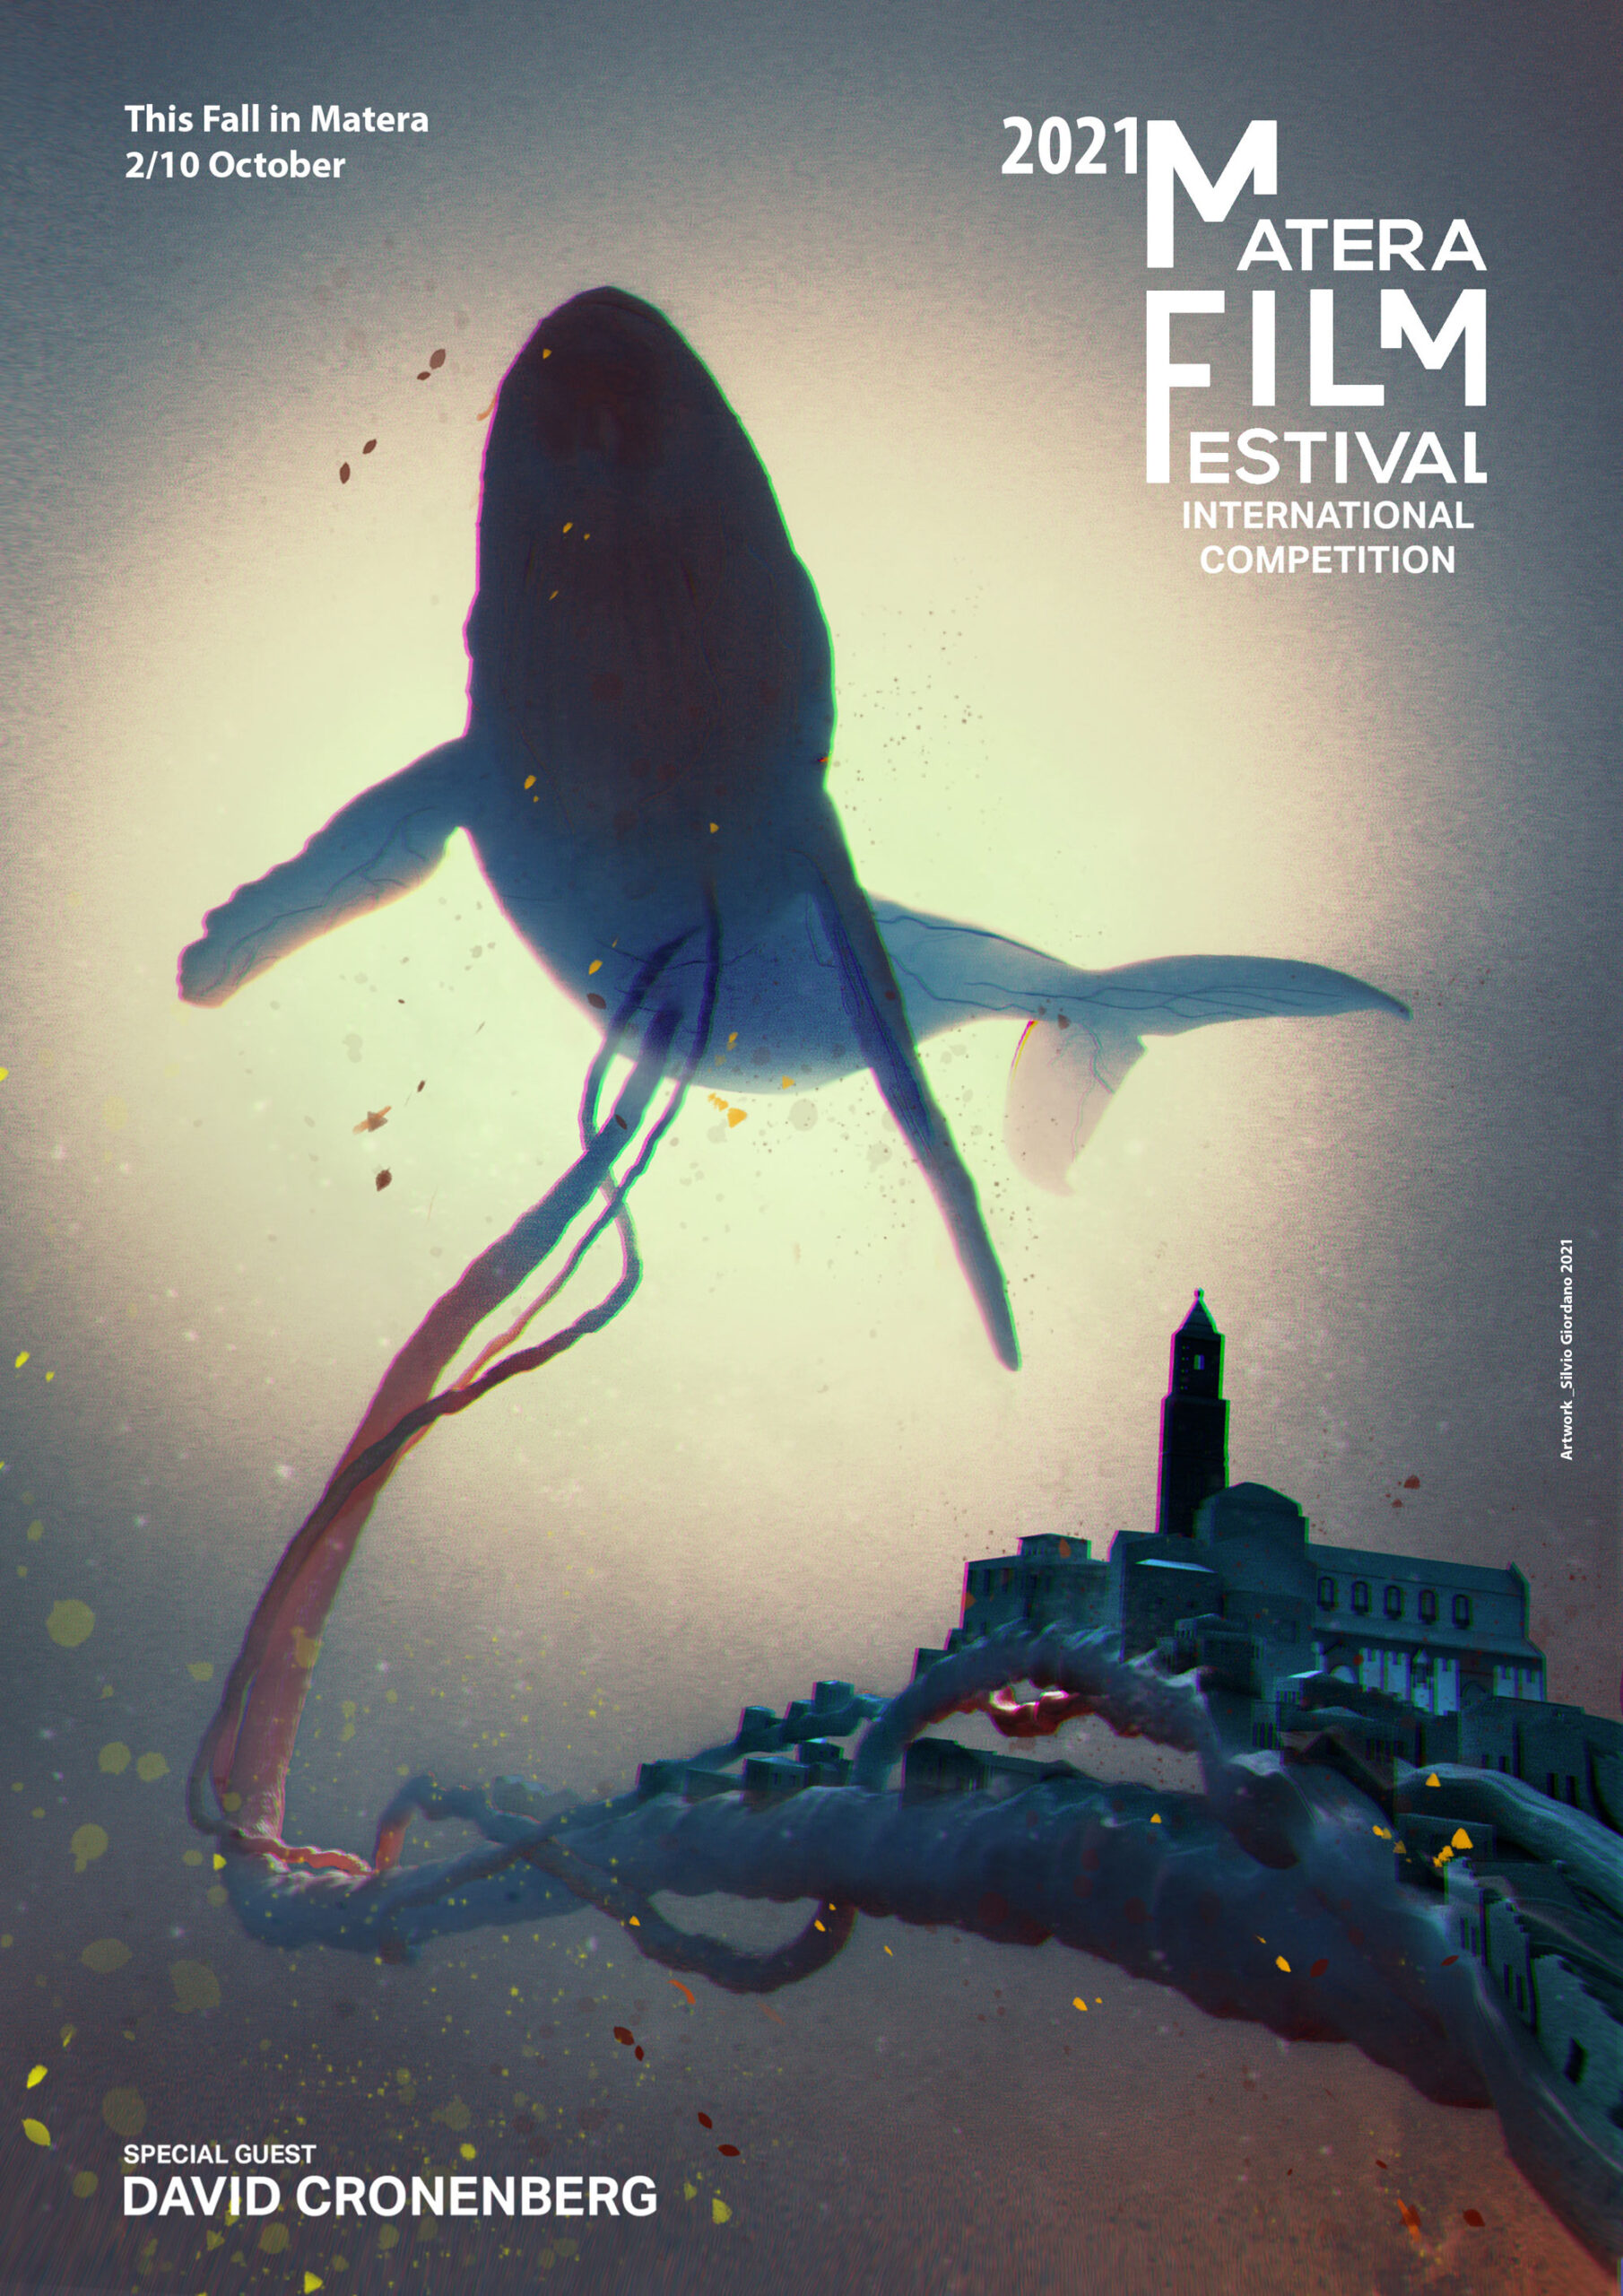 Locandina Matera Film Festival 2021, realizzata dal creative director Silvio Giordano